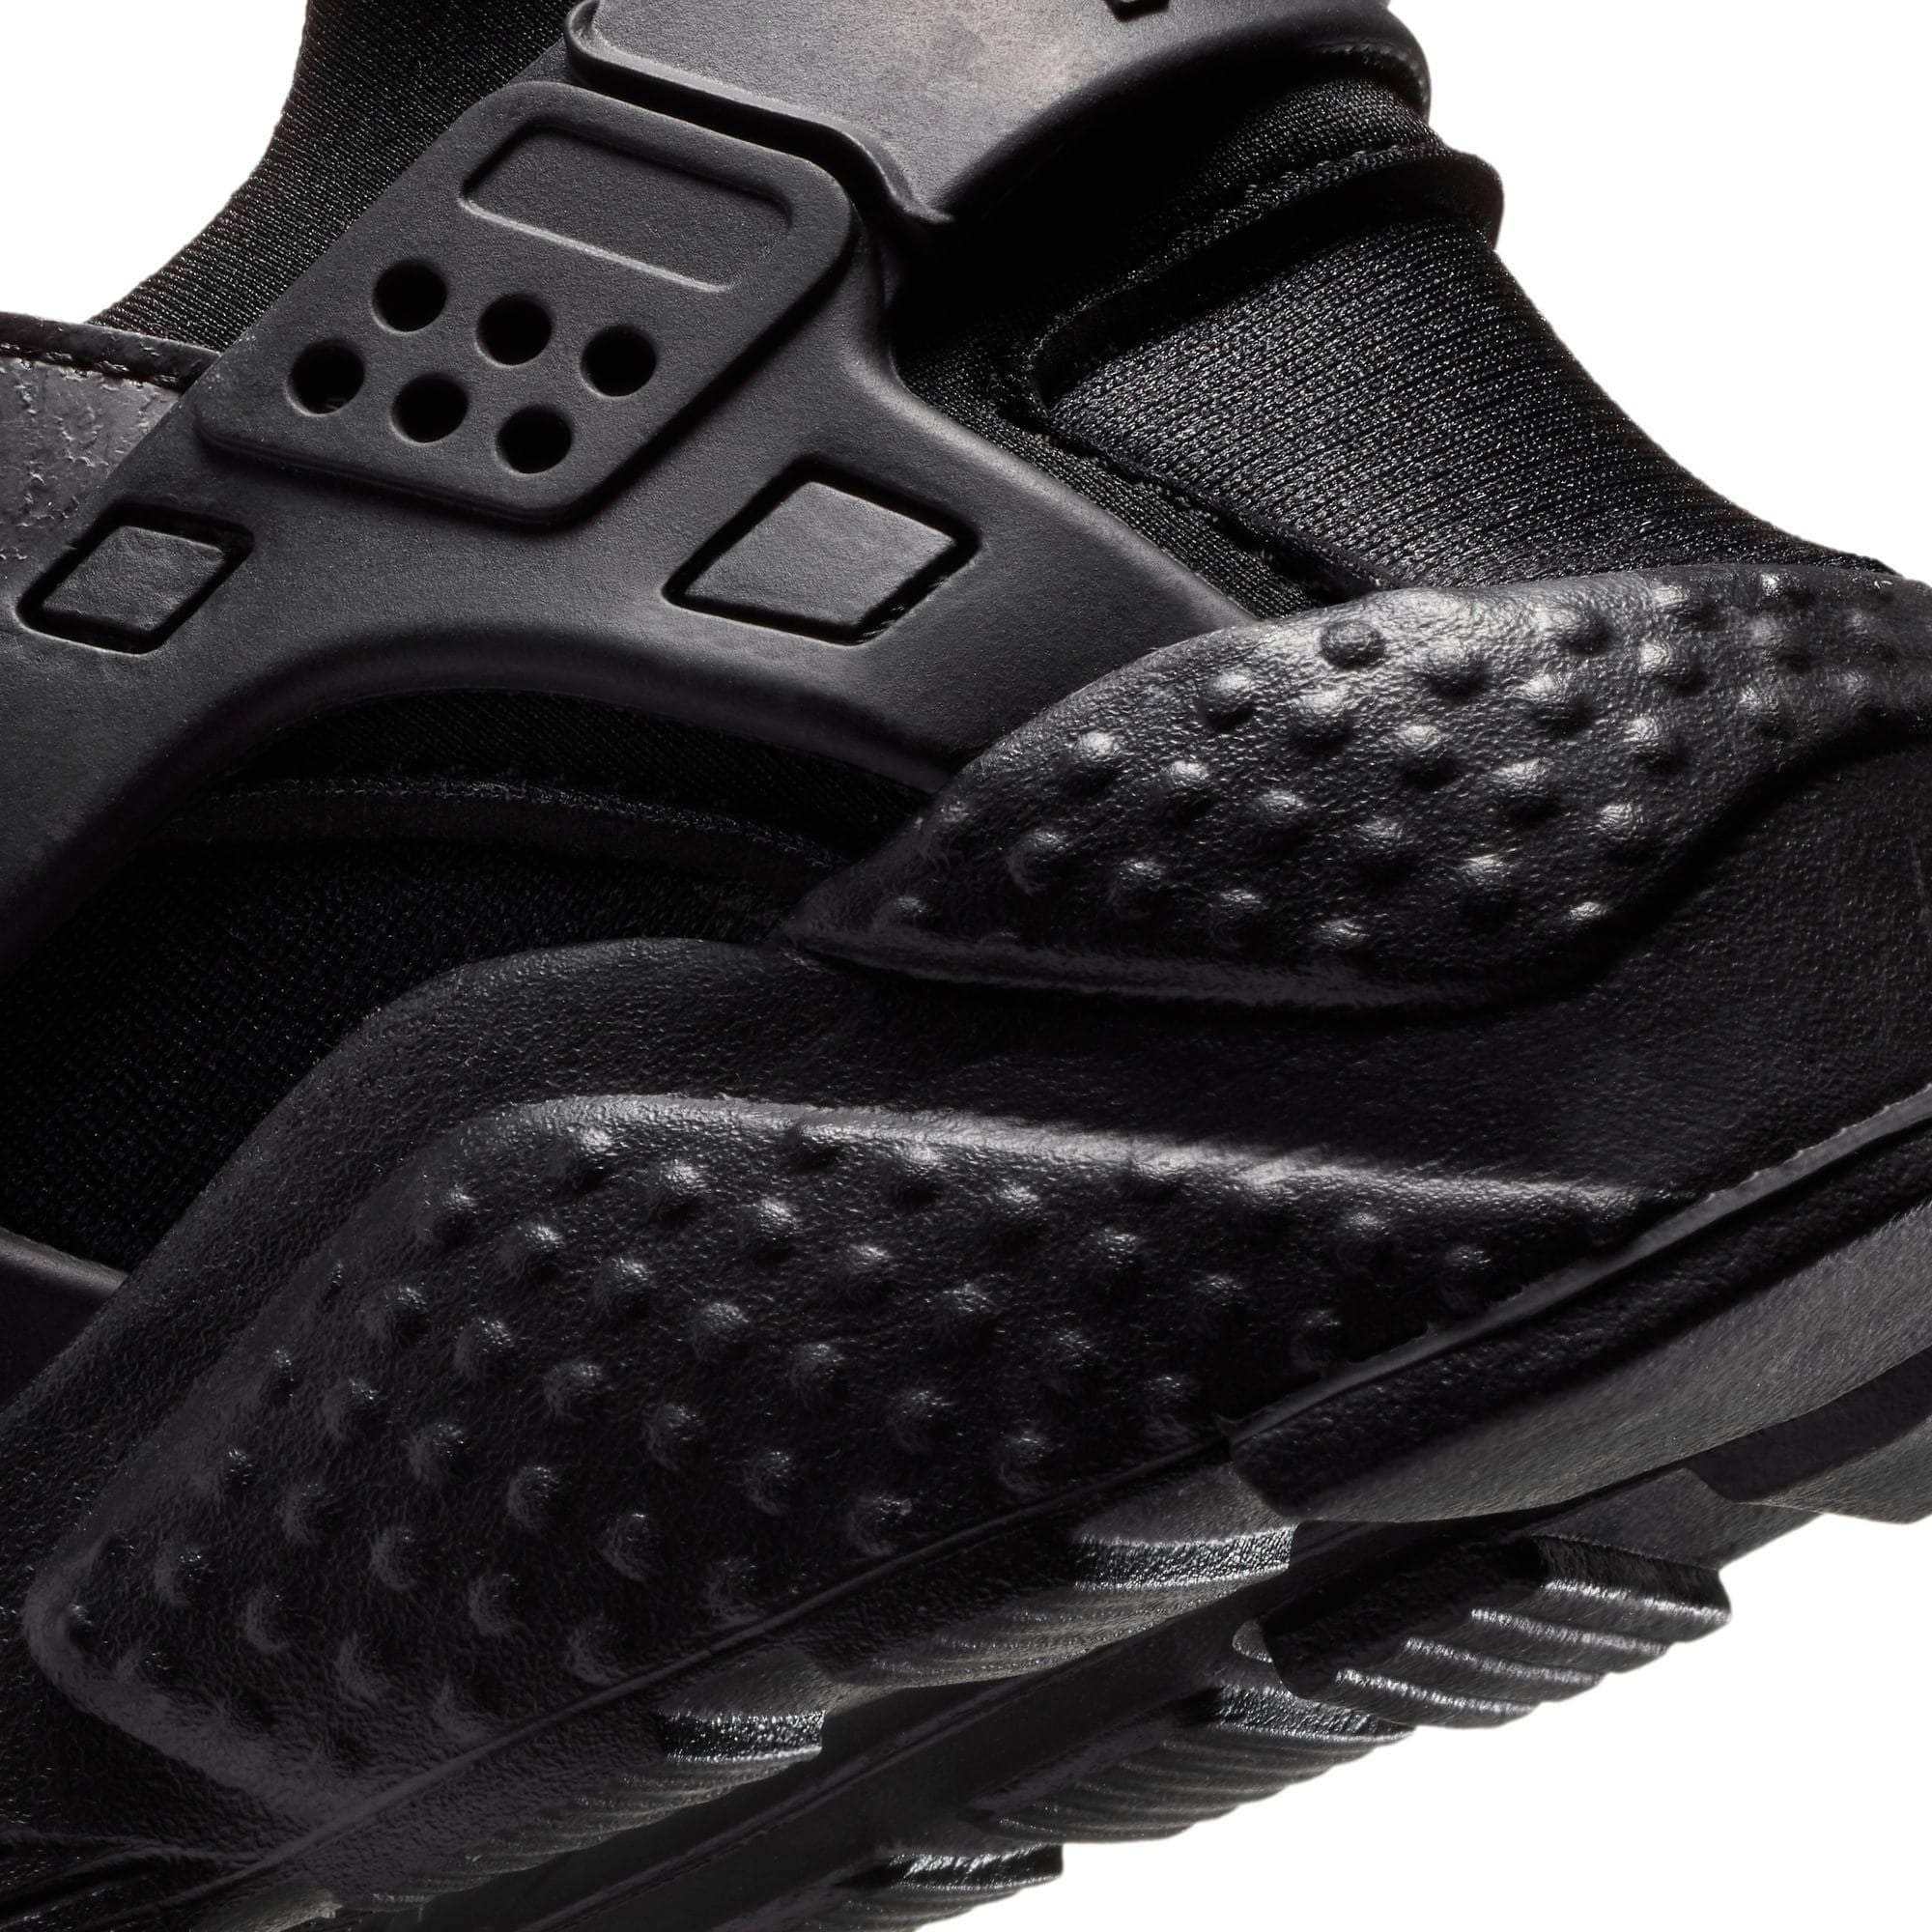 NIKE FOOTWEAR Nike Air Huarache Run "Triple Black" - Boy's GS